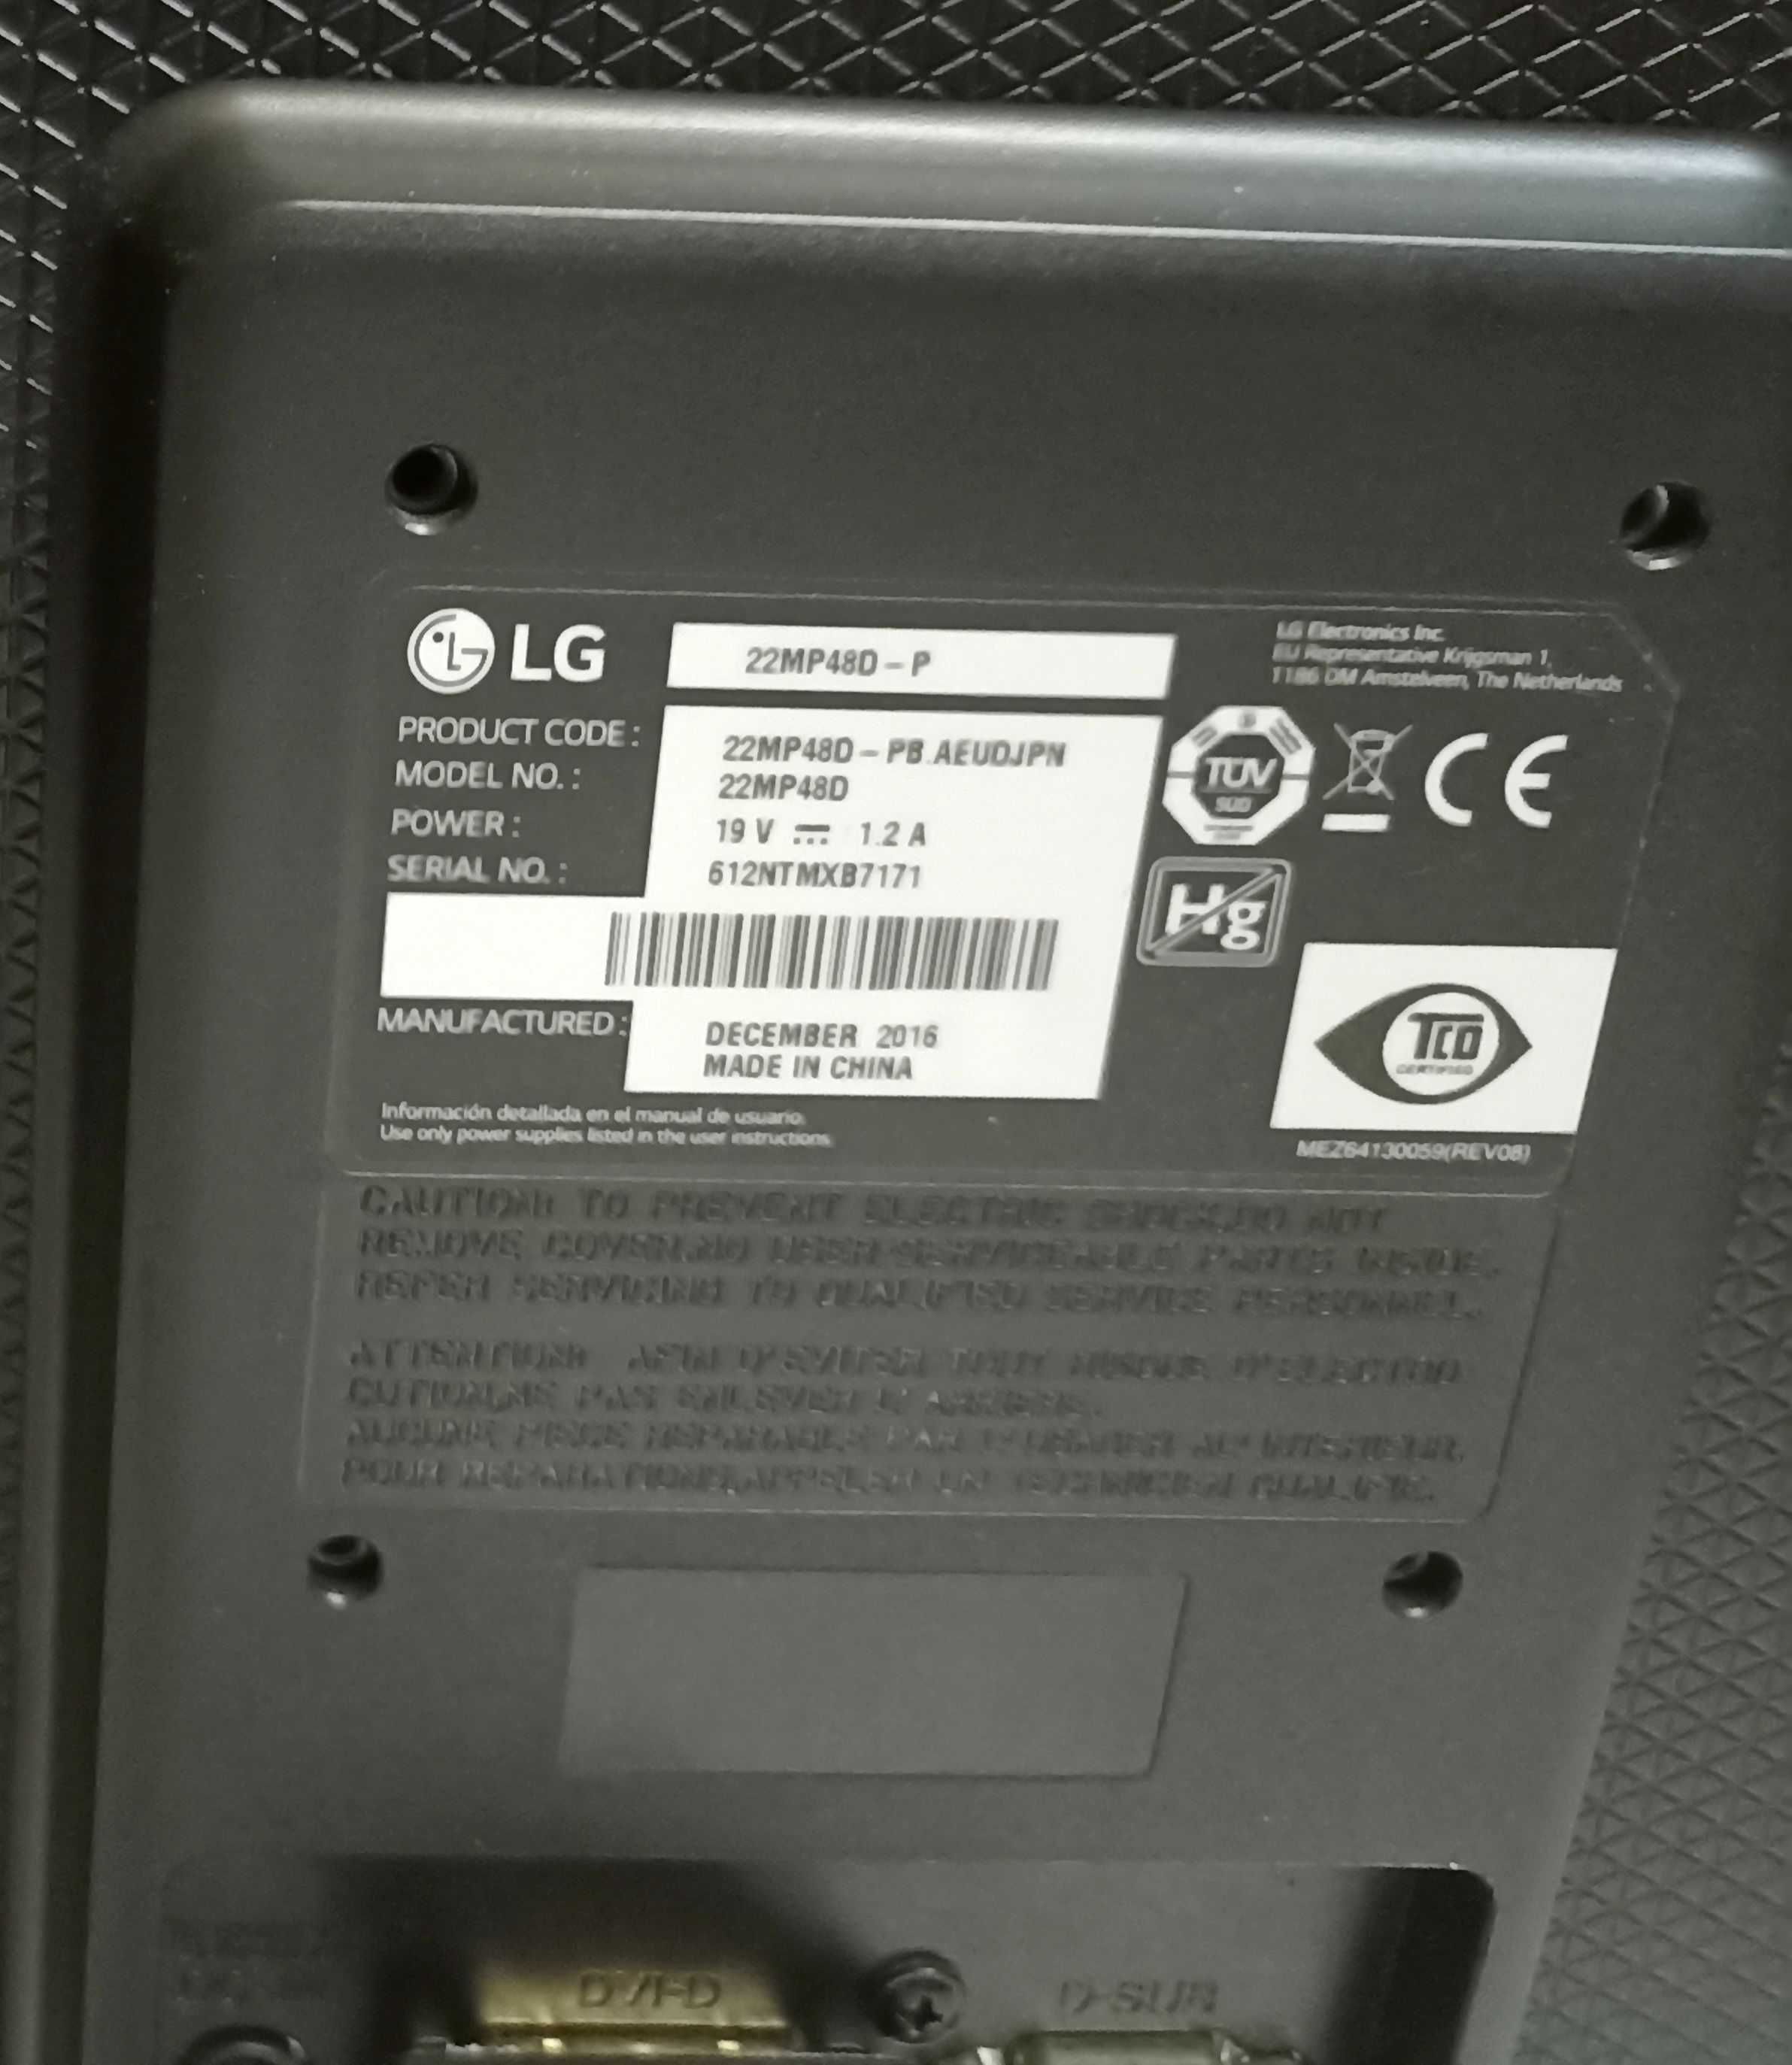 Monitor LG 22 MP480 - P